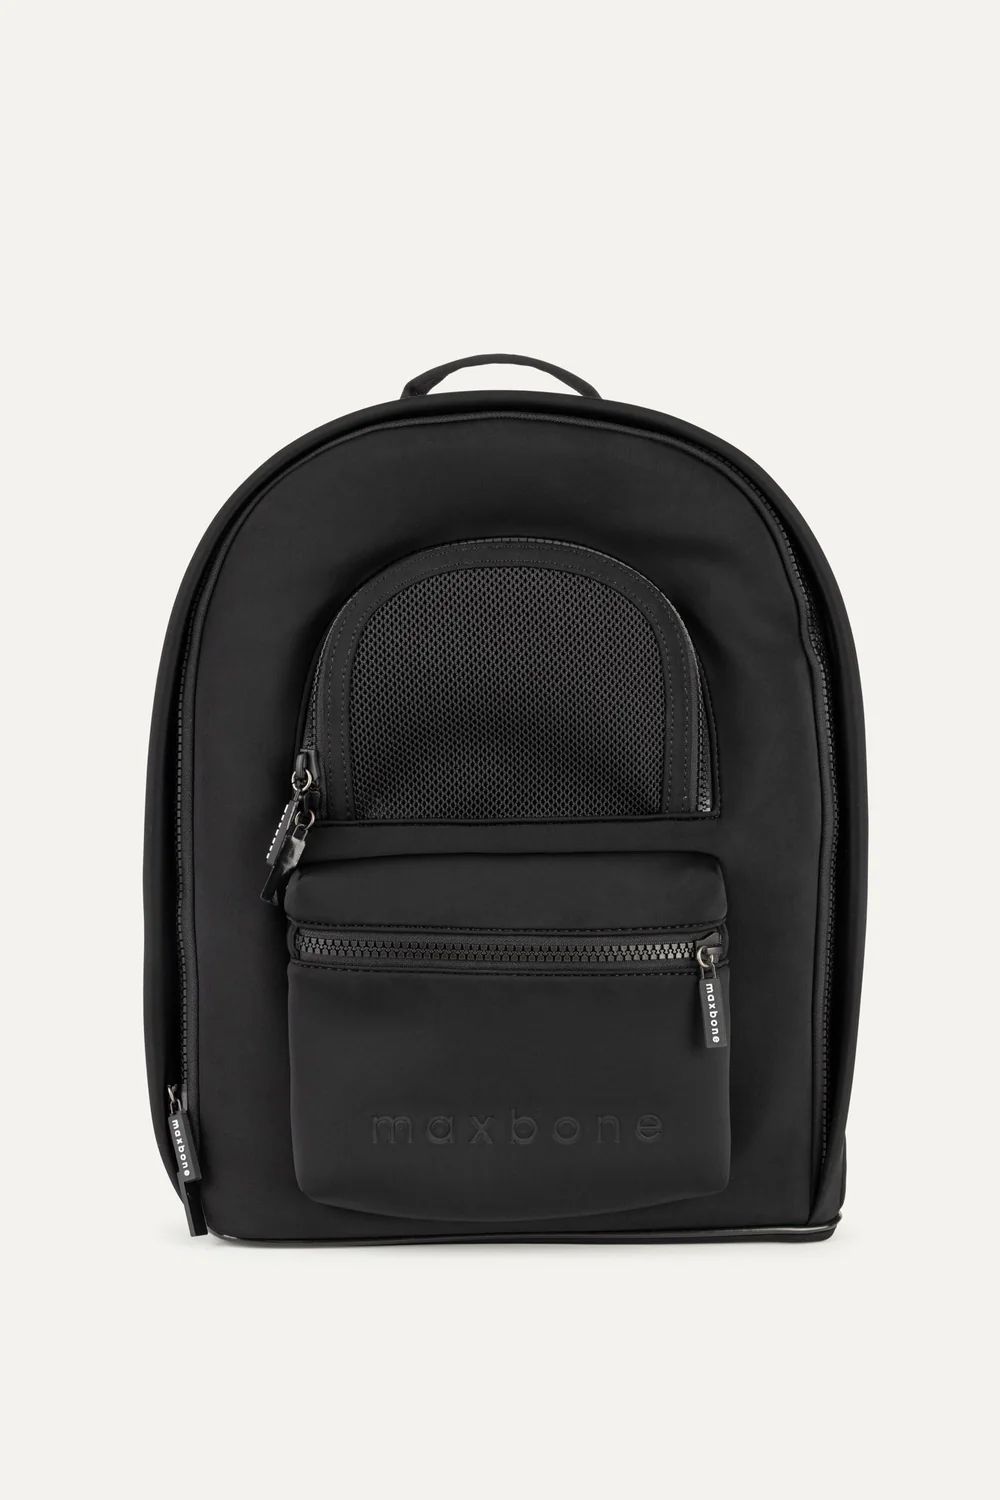 Go Everywhere Backpack | max-bone